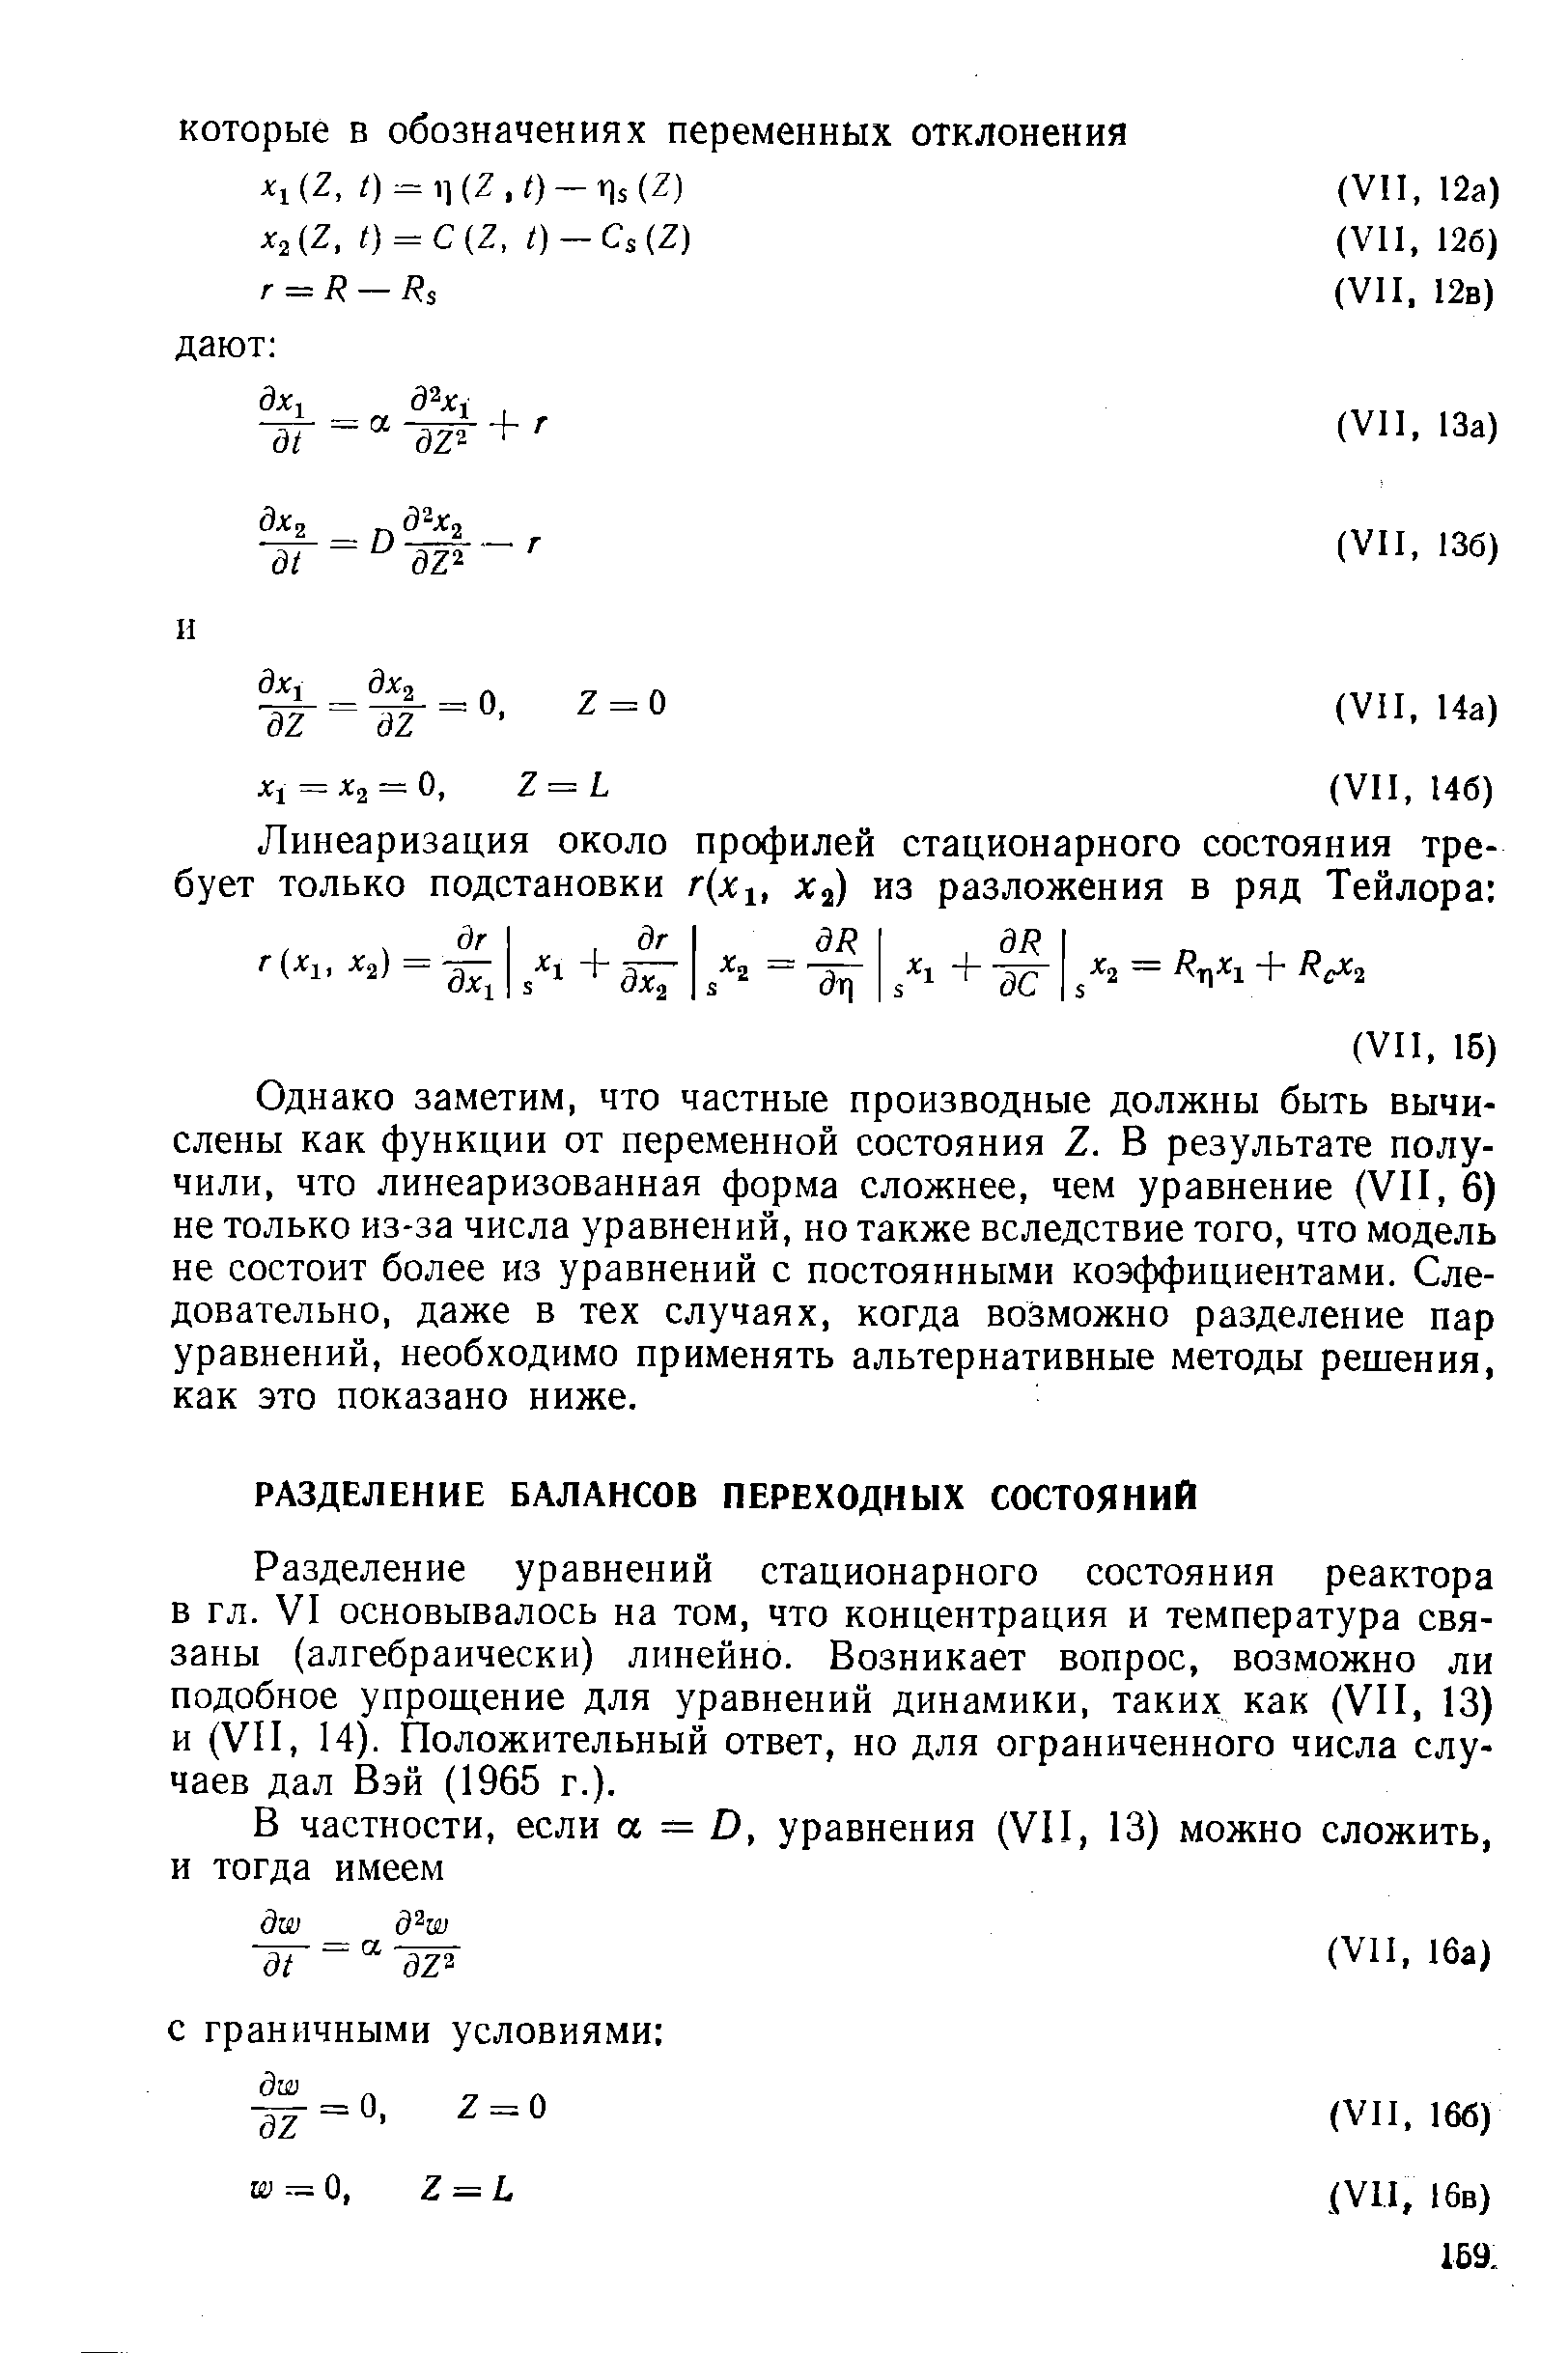 Разделение уравнений стационарного состояния реактора в гл. VI основывалось на том, что концентрация и температура связаны (алгебраически) линейно. Возникает вопрос, возможно ли подобное упрощение для уравнений динамики, таких как (VII, 13) и (VII, 14). Положительный ответ, но для ограниченного числа случаев дал Вэй (1965 г.).